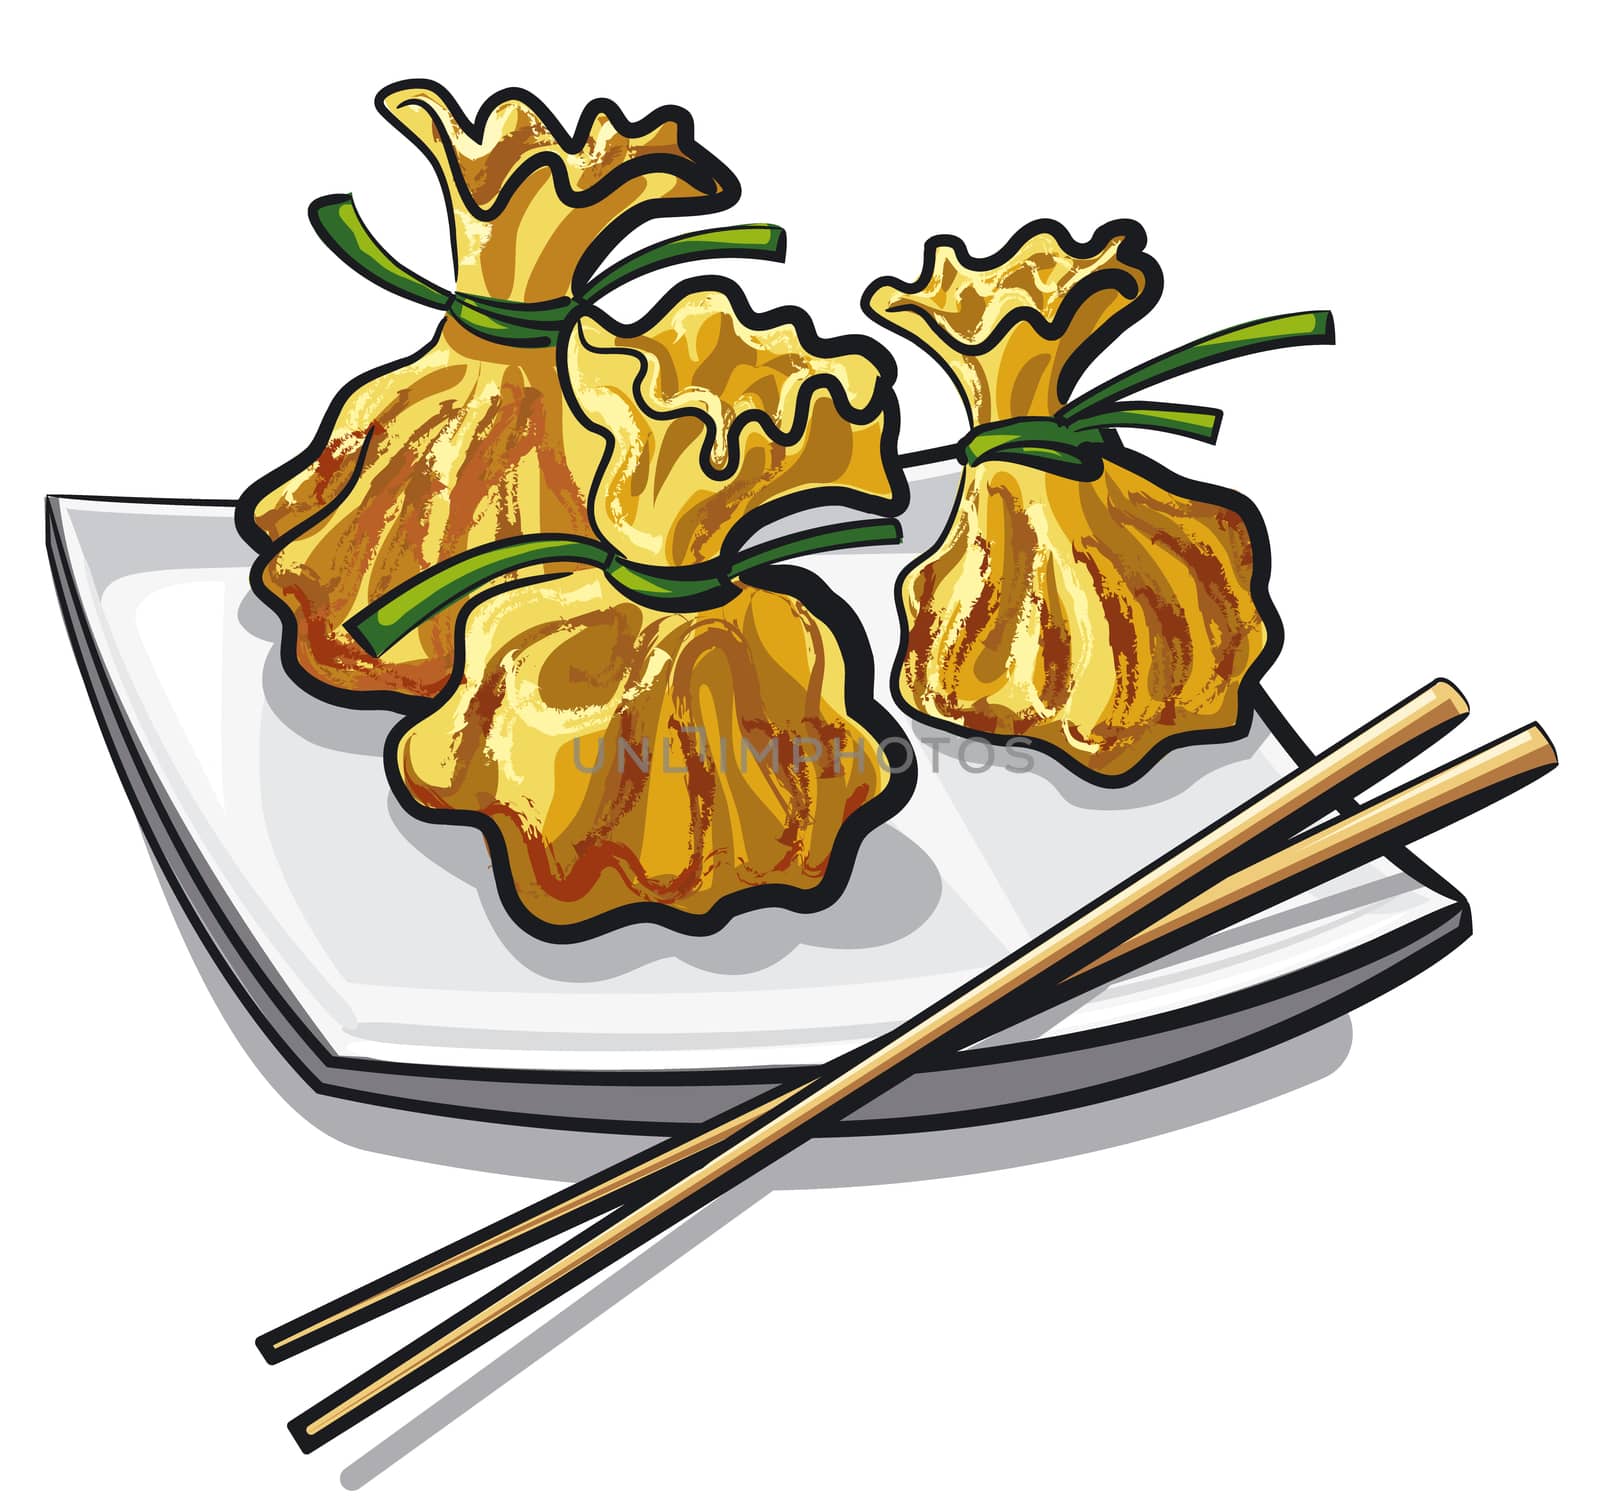 chinese steamed dumplings by olegtoka